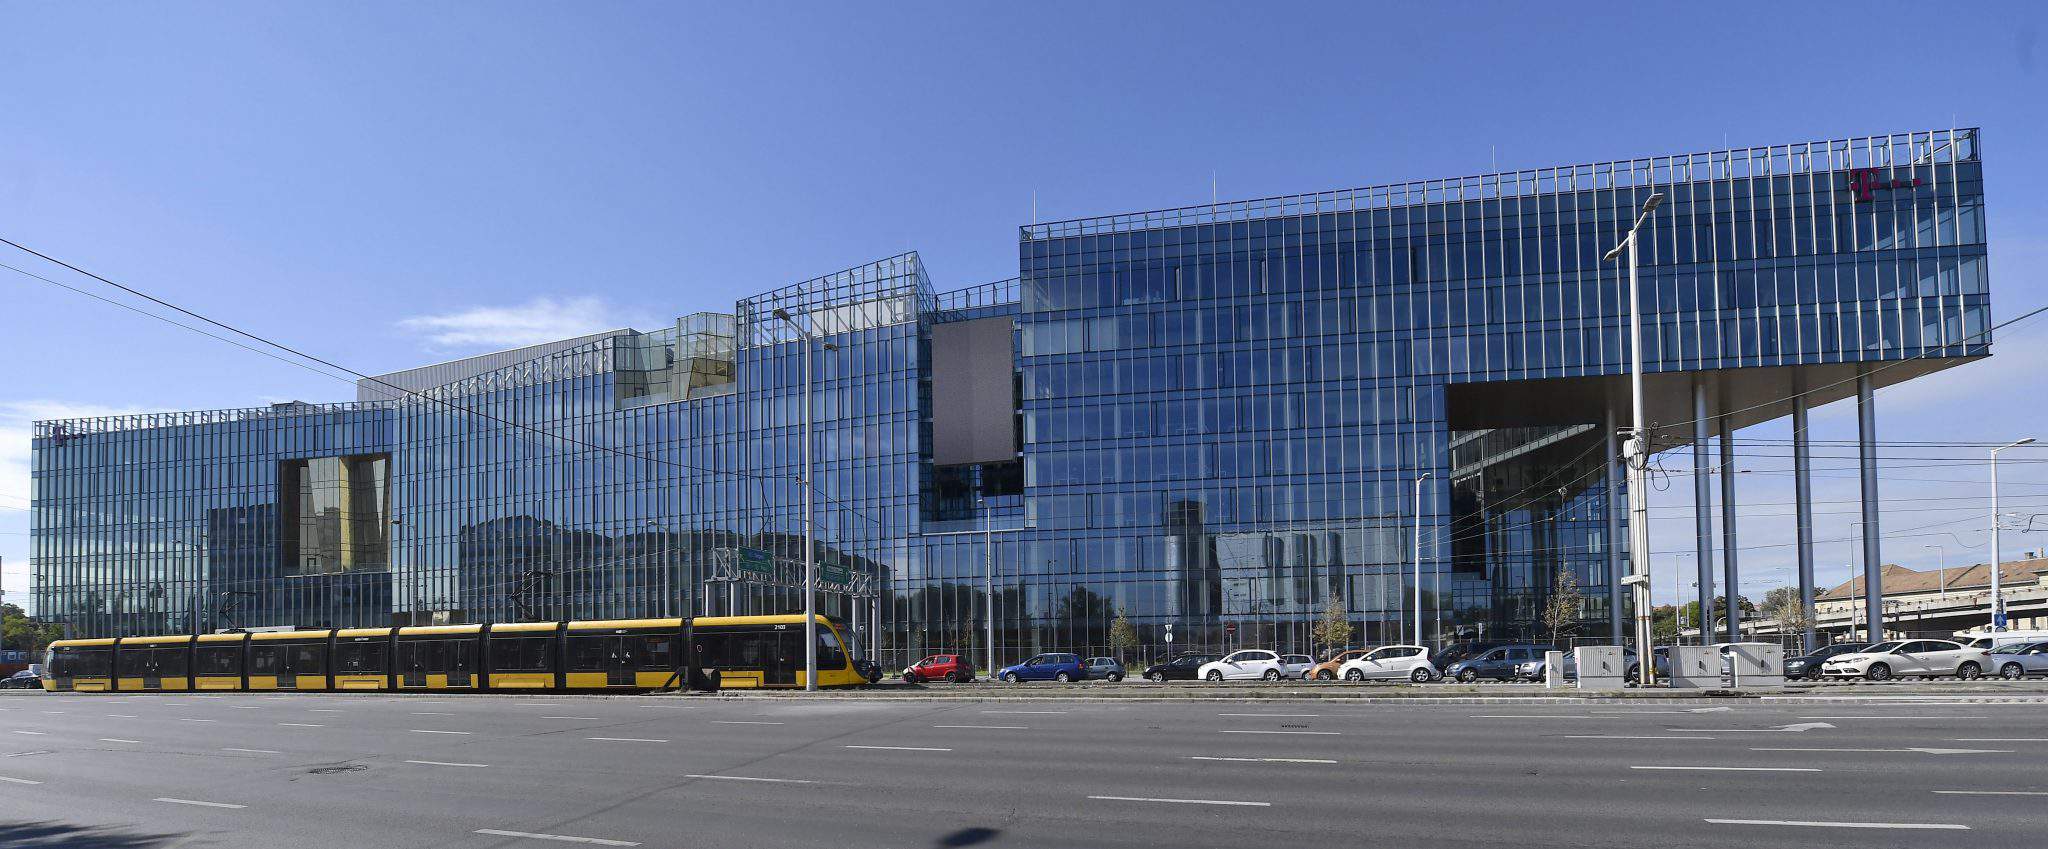 أعلنت Wing عن الانتهاء من بناء 50 مليار فورنت (154.5 مليون يورو) المقر الرئيسي لشركة Magyar Telekom و T-Systems